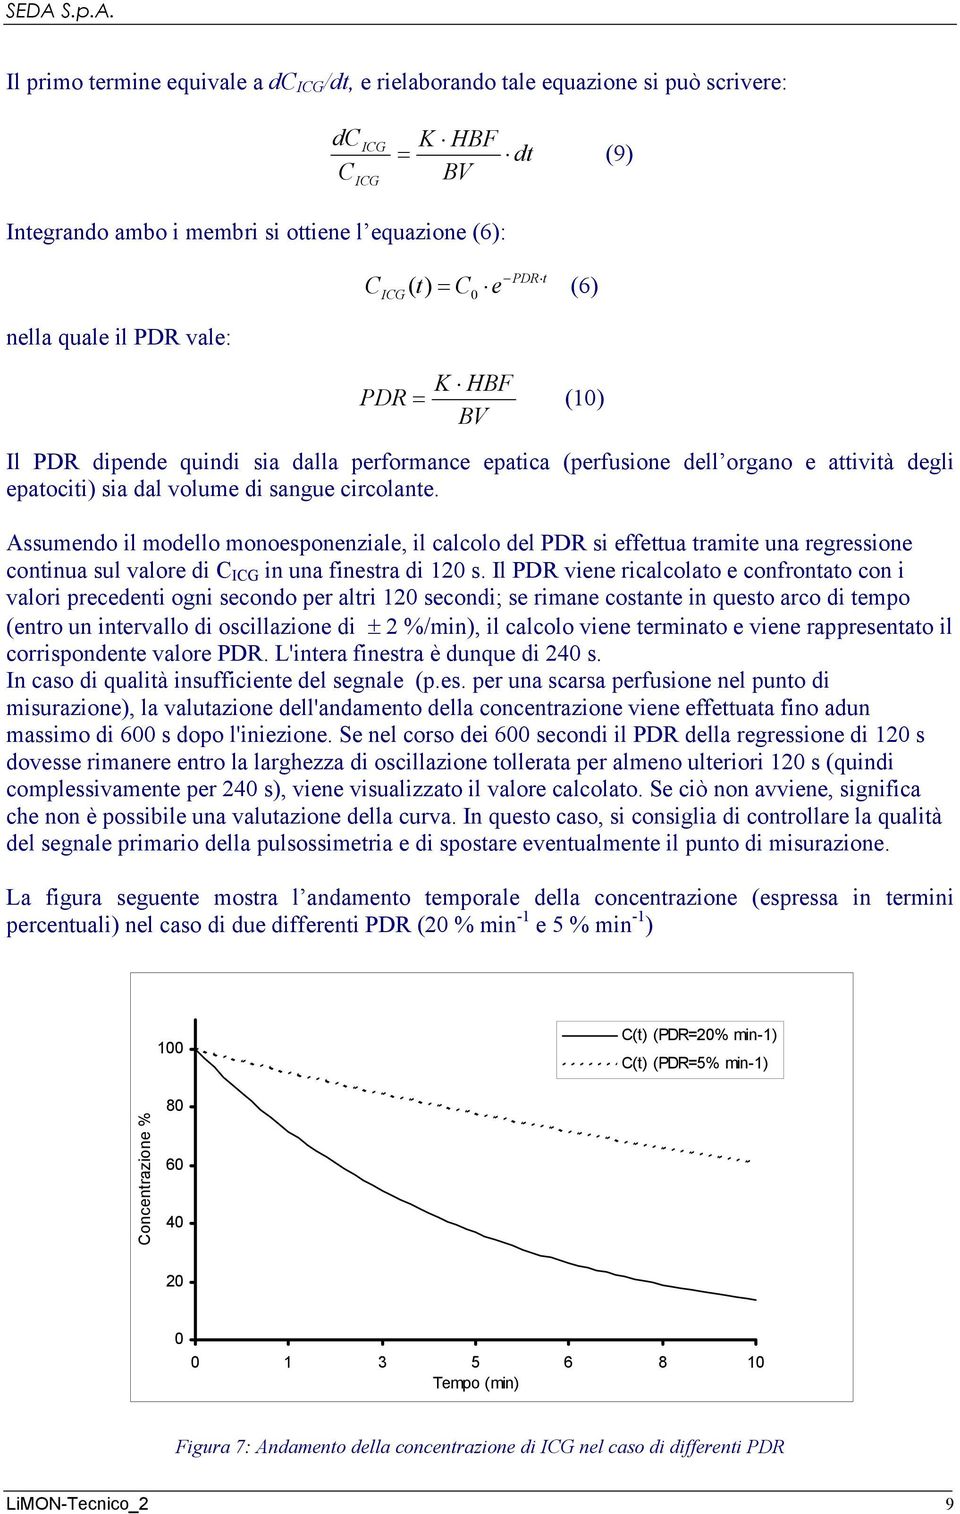 Assumendo il modello monoesponenziale, il calcolo del PDR si effettua tramite una regressione continua sul valore di C in una finestra di 120 s.